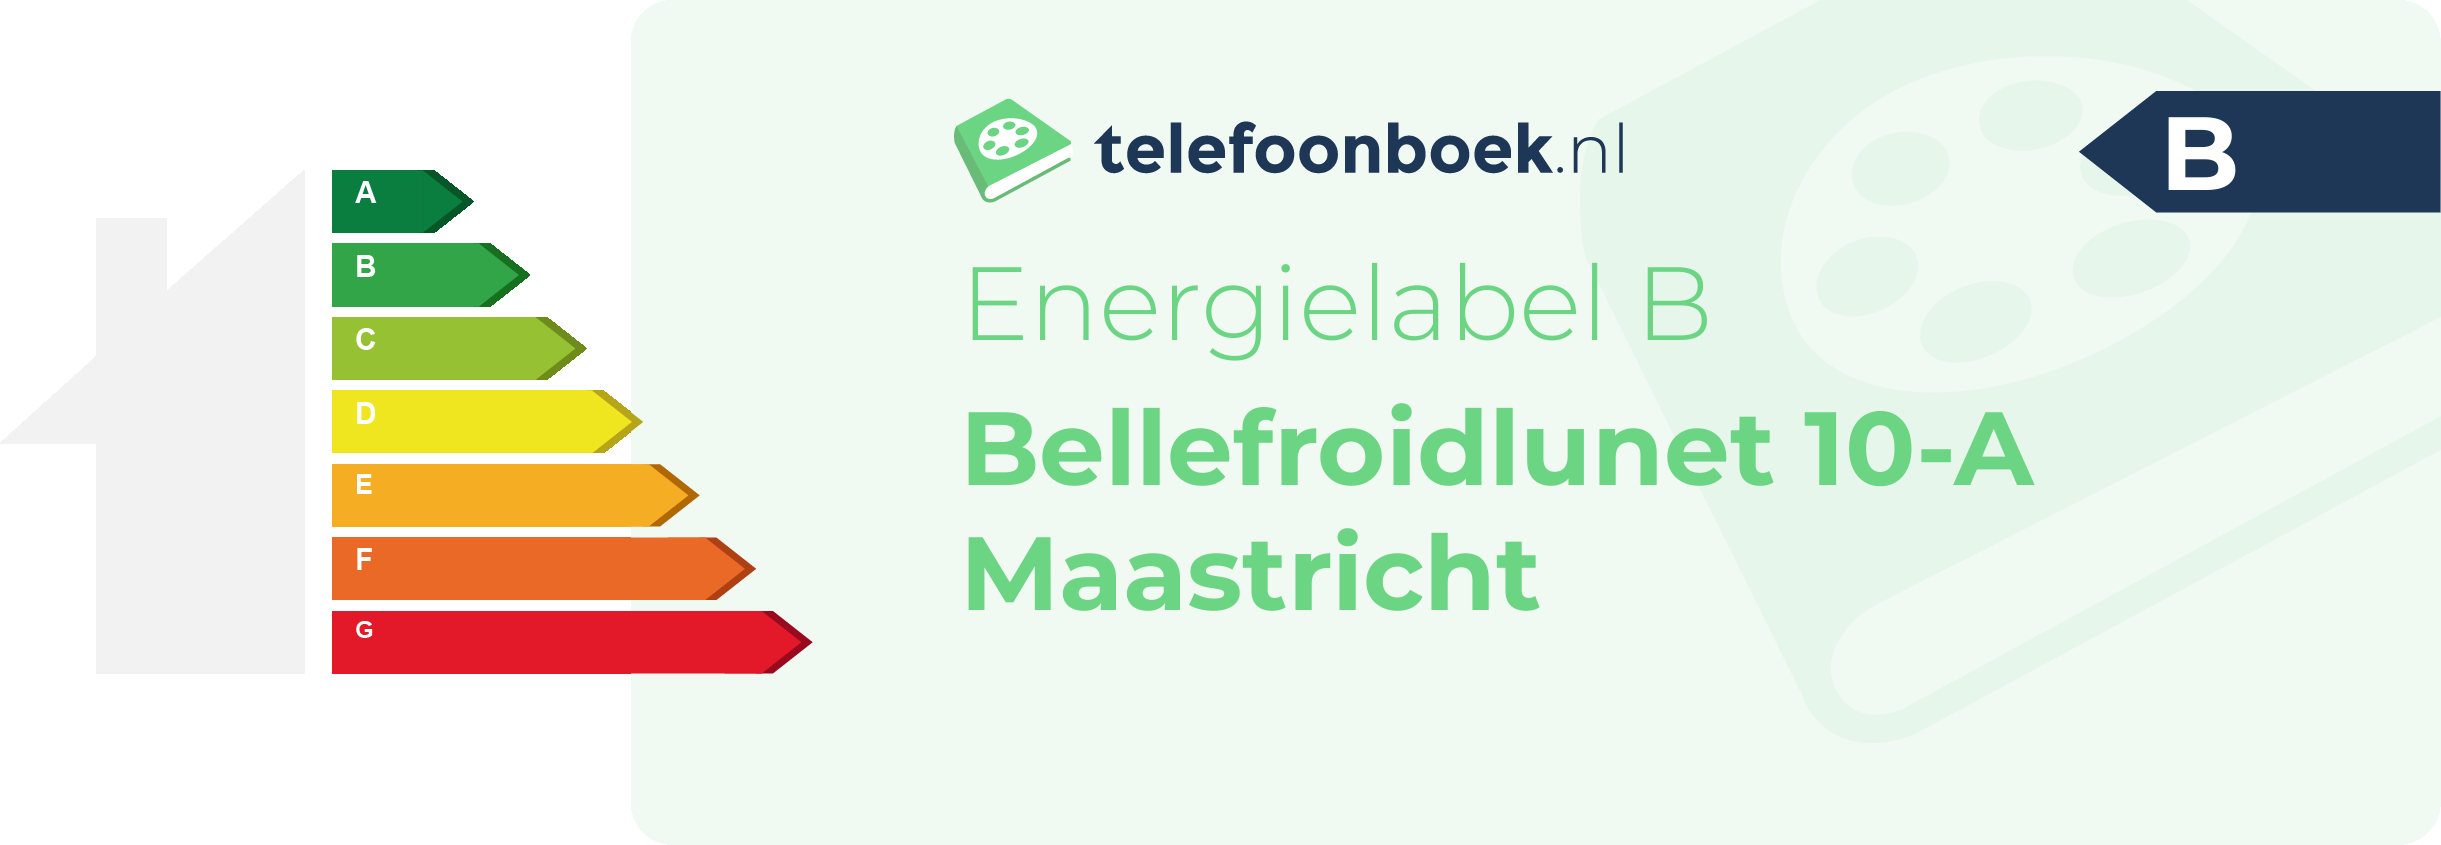 Energielabel Bellefroidlunet 10-A Maastricht